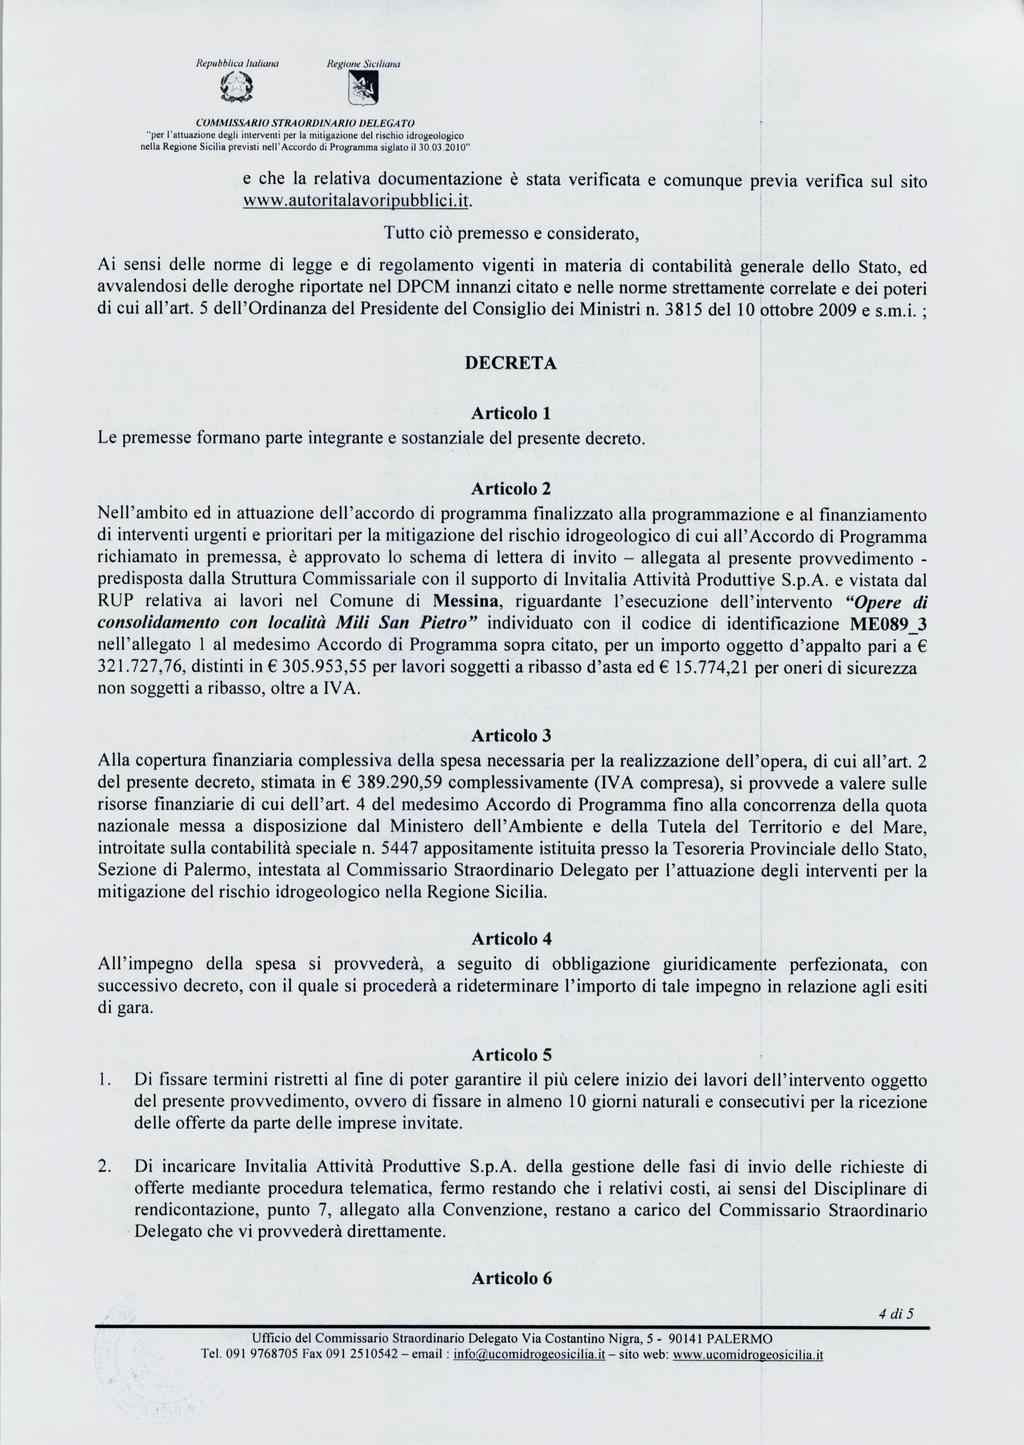 Repubblica Italiana & RegioneSiciliana COMMISSARIO STRAORDINARIO DELEGA TO "per l'attuazionedegliinterventiper la mitigazione del rischioidrogeologico nellaregionesiciliaprevistinell'accordodi